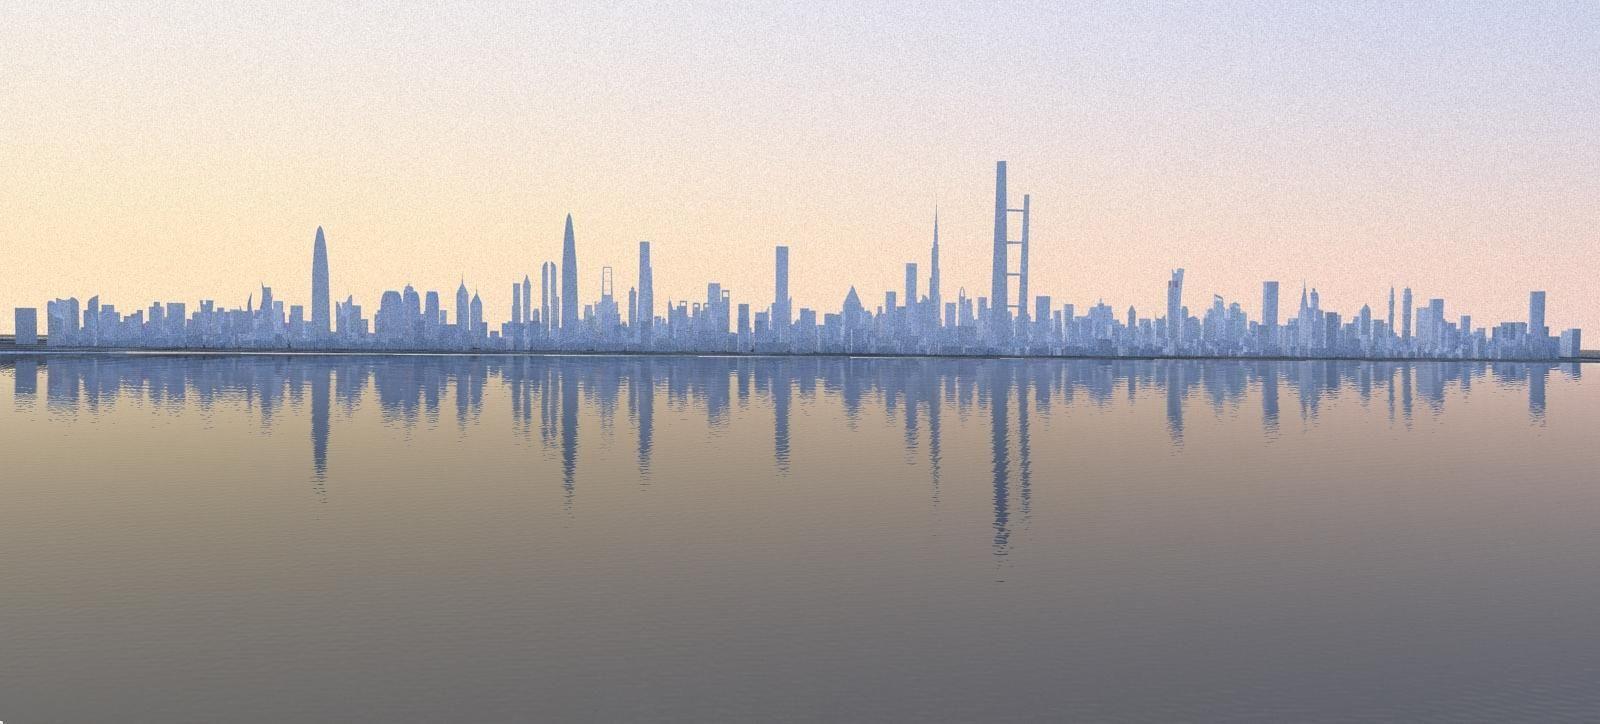 Image - Tomorrowland? Or Dubai, UAE? #tomorrowland #background #dubai - Post 582